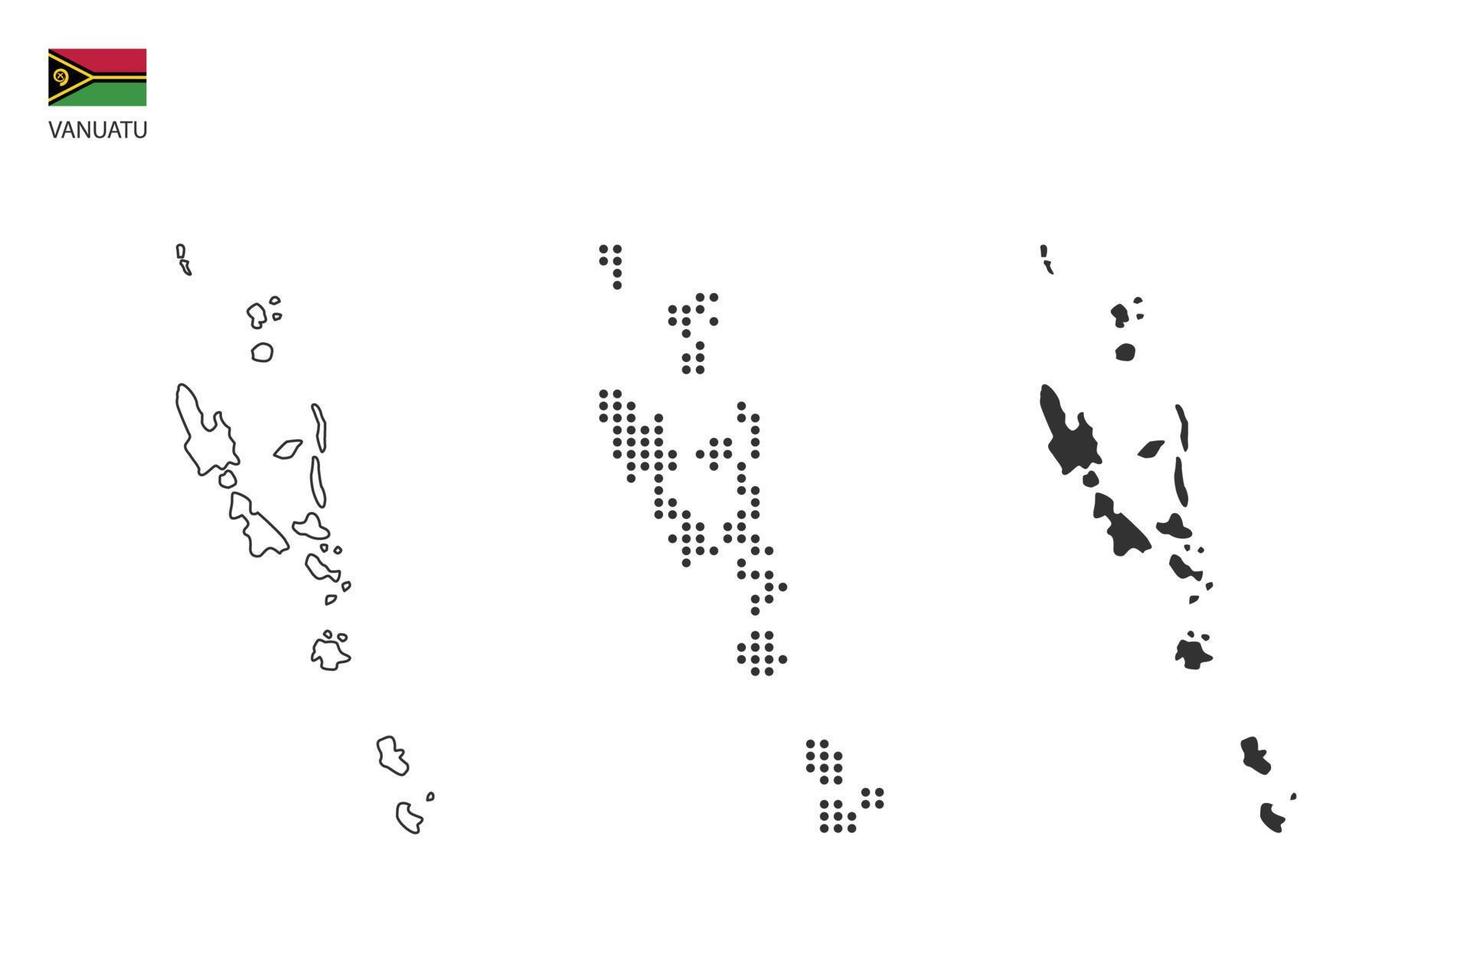 3 versiones del vector de la ciudad del mapa de vanuatu por estilo de simplicidad de contorno negro delgado, estilo de punto negro y estilo de sombra oscura. todo en el fondo blanco.